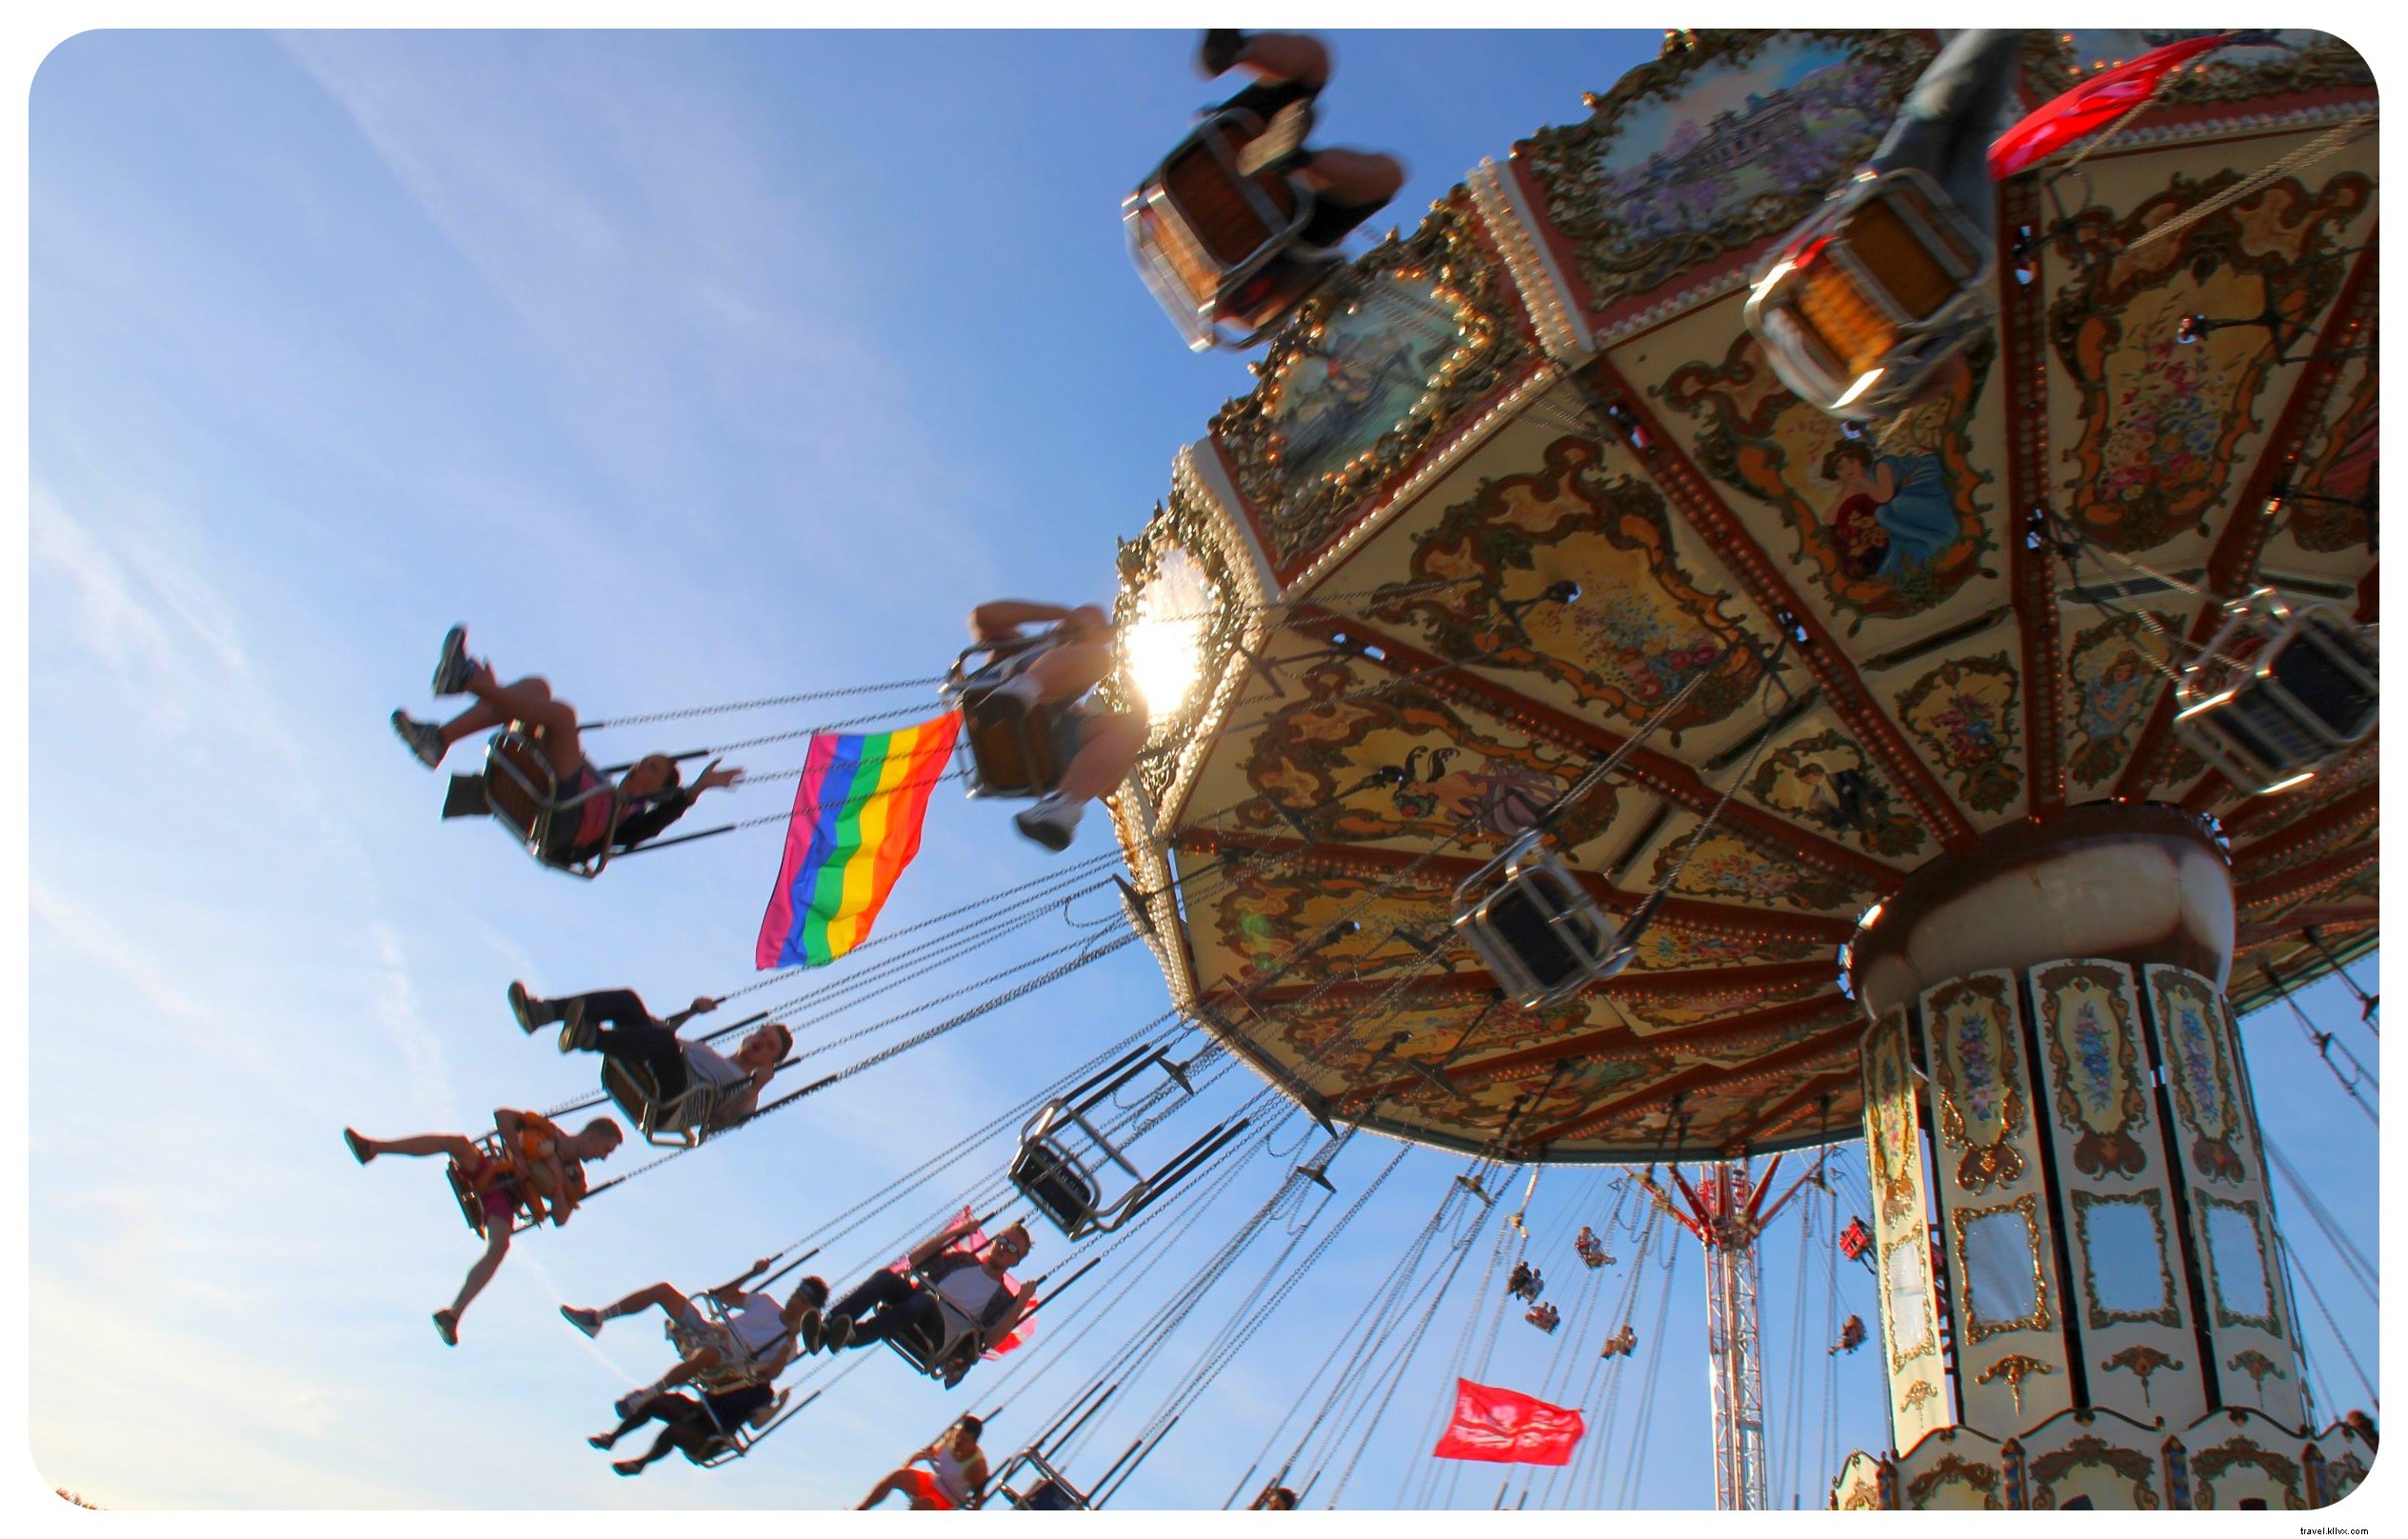 L epico 25esimo Pride Festival di Brighton:Carnival of Diversity